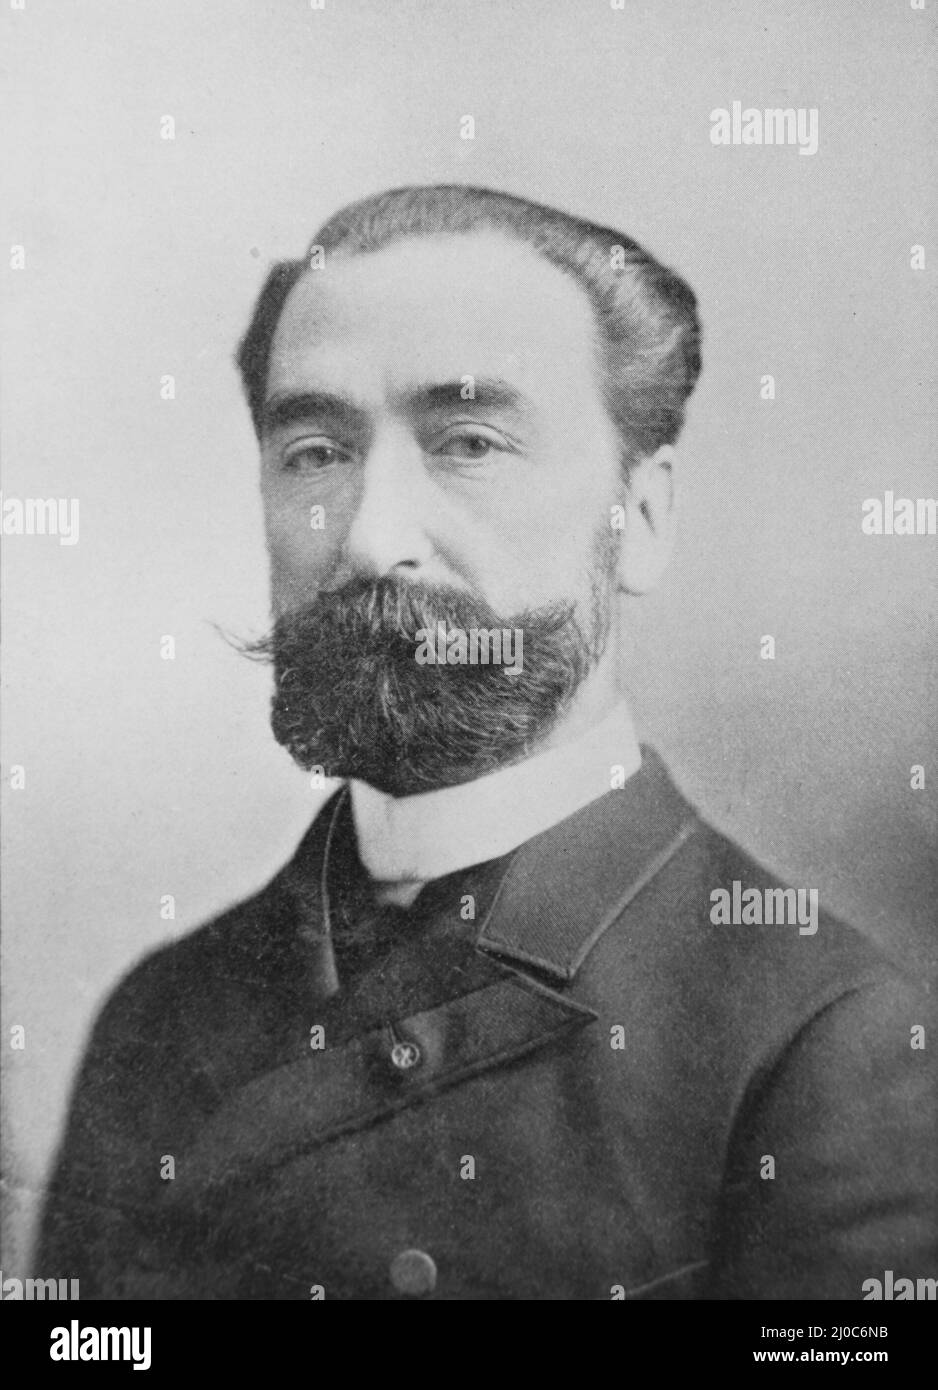 Ritratto di Nicolas Léonard Sadi Carnot, padre della termodinamica; fotografia in bianco e nero scattata intorno al 1890s Foto Stock